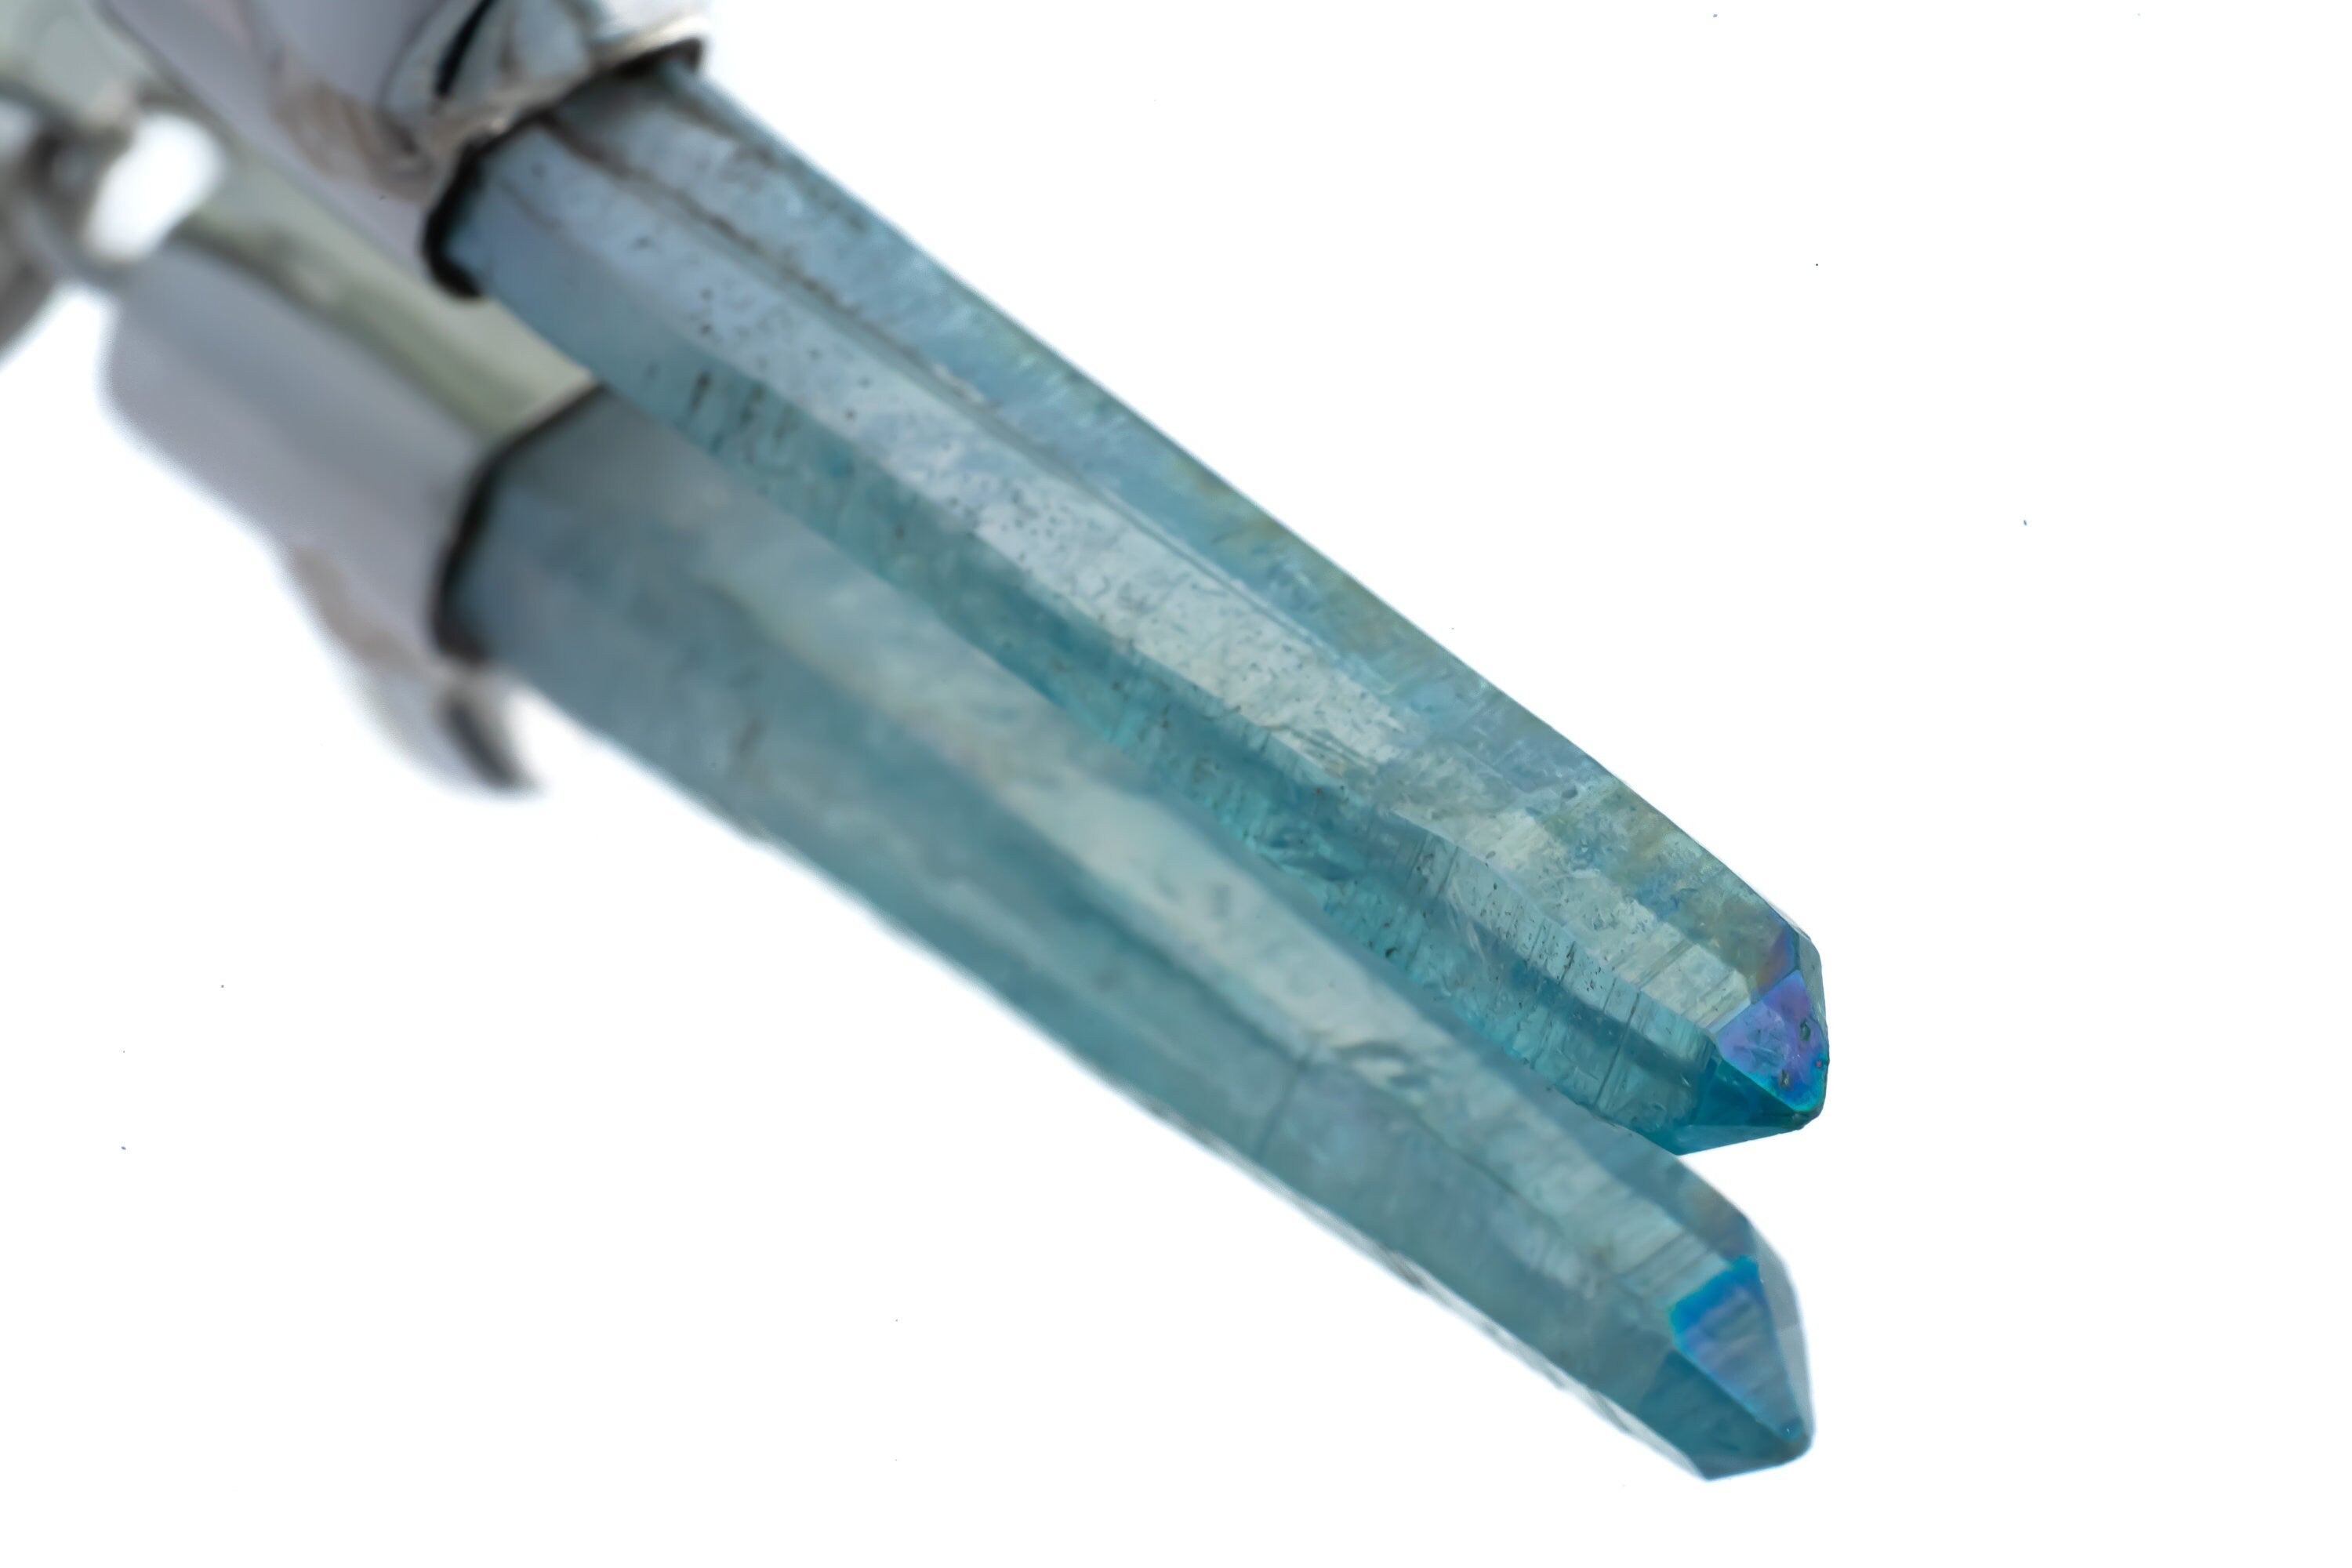 Ethereal Alchemy: Aqua Aura Quartz & Raw Amethyst - High Shine Sterling Silver Crystal Pendant NO/15